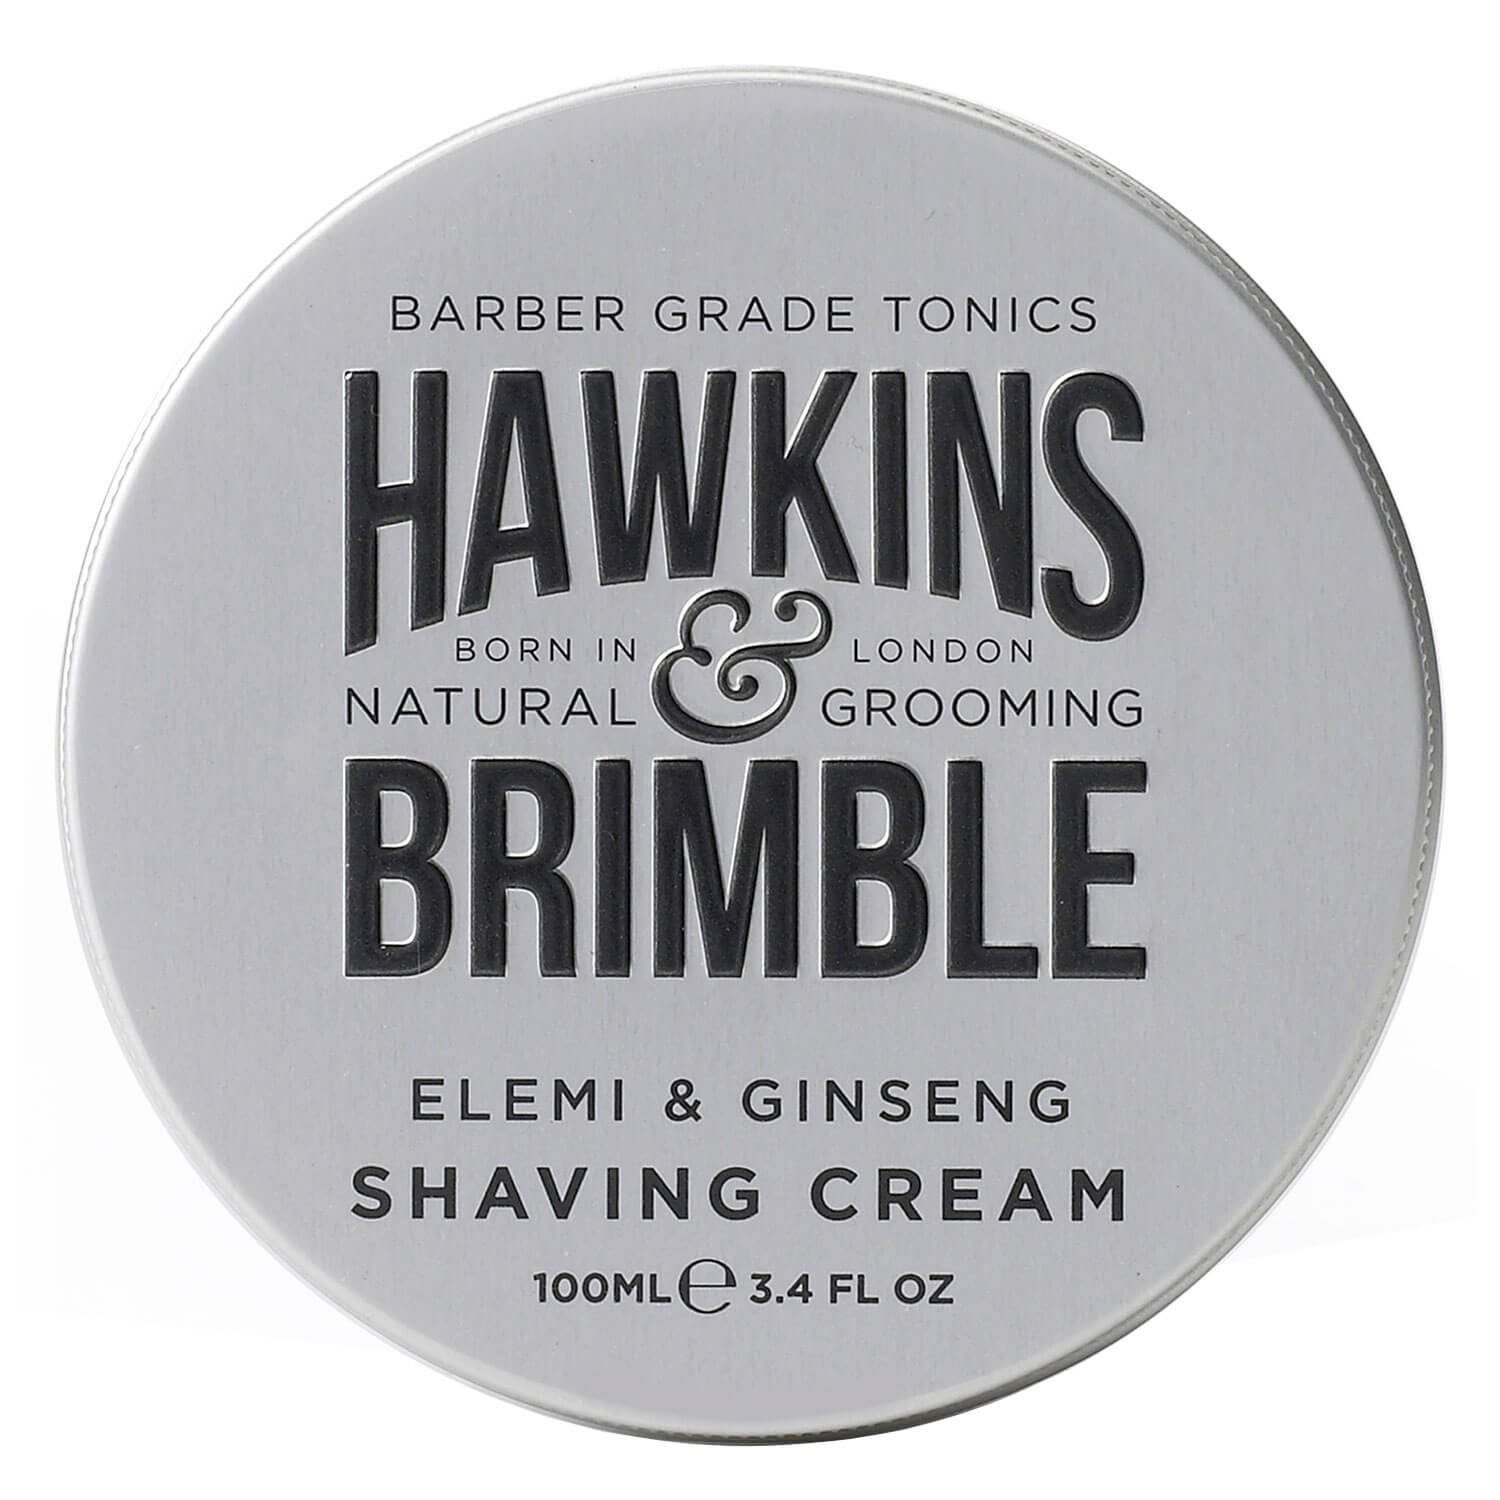 Produktbild von Hawkins & Brimble - Shaving Cream